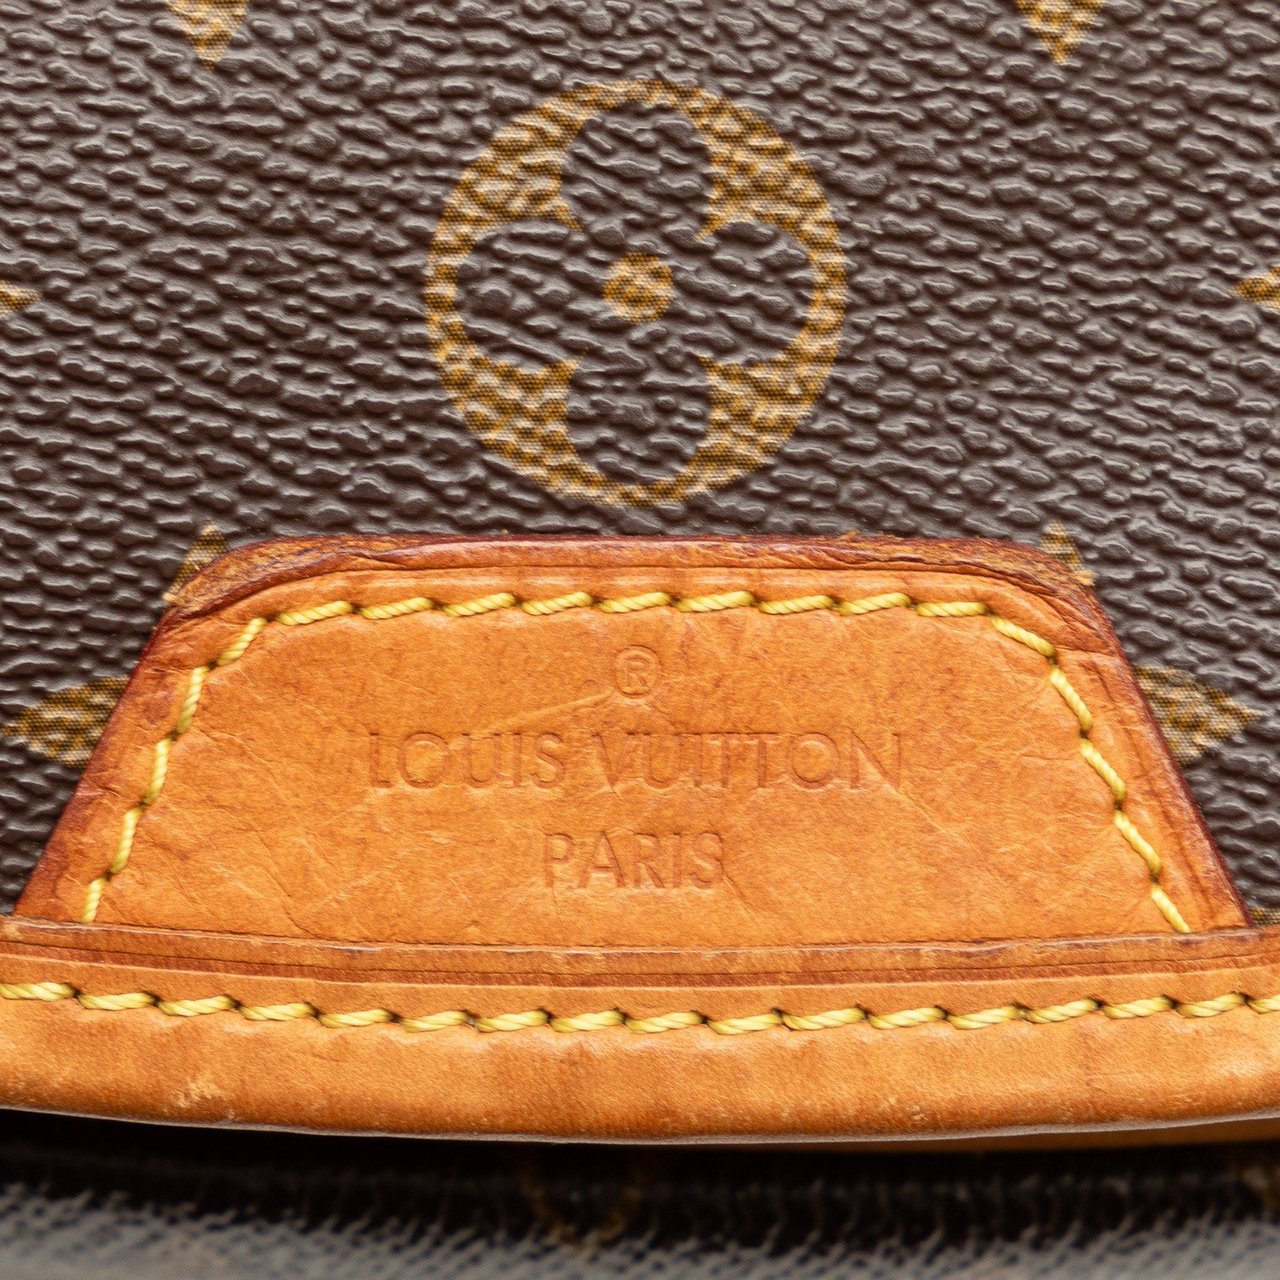 Louis Vuitton Monogram Menilmontant PM Bruin